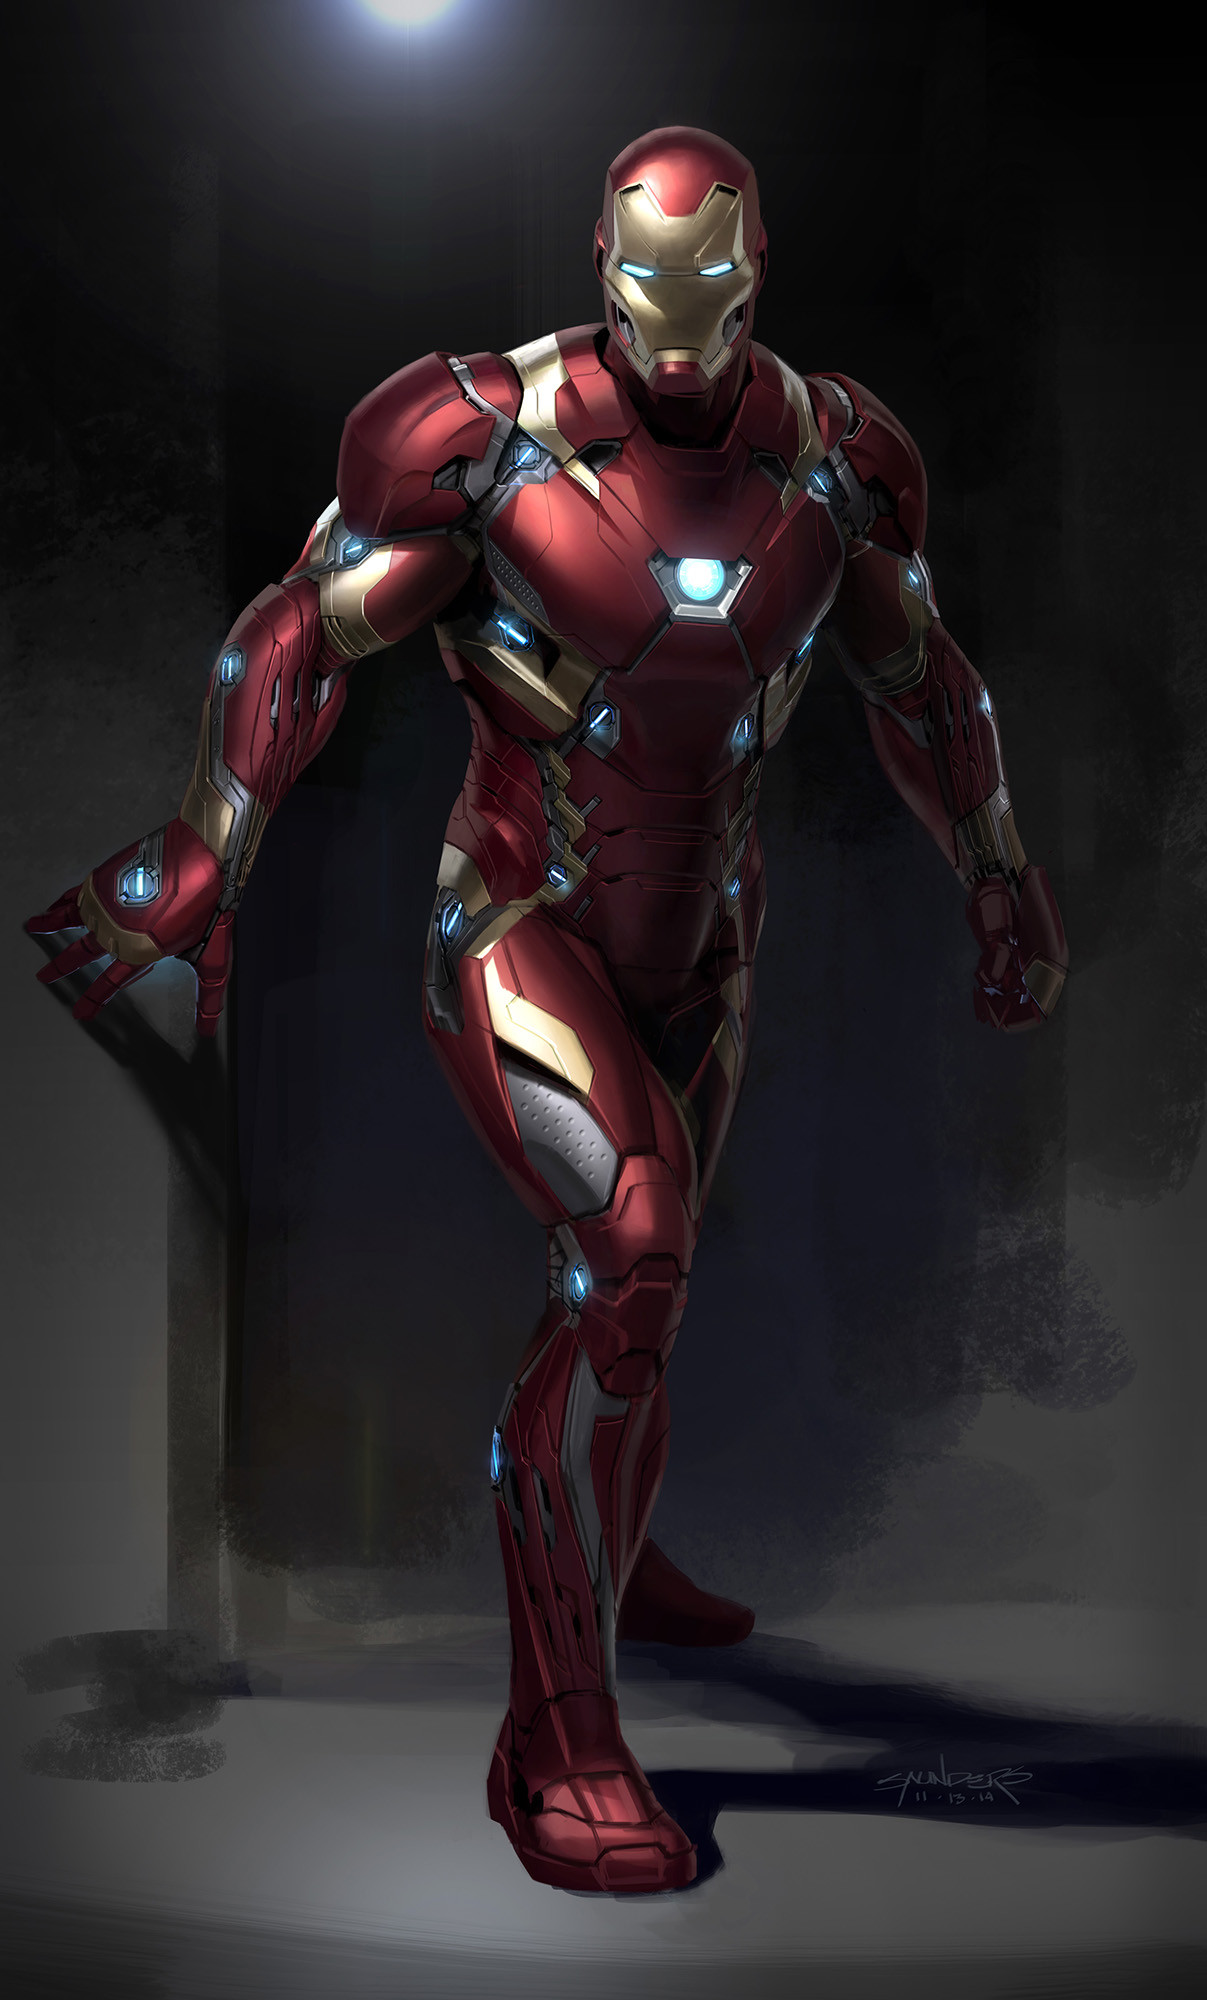 Phil Saunders - Captain America: Civil War (2014) - Iron Man Mk46